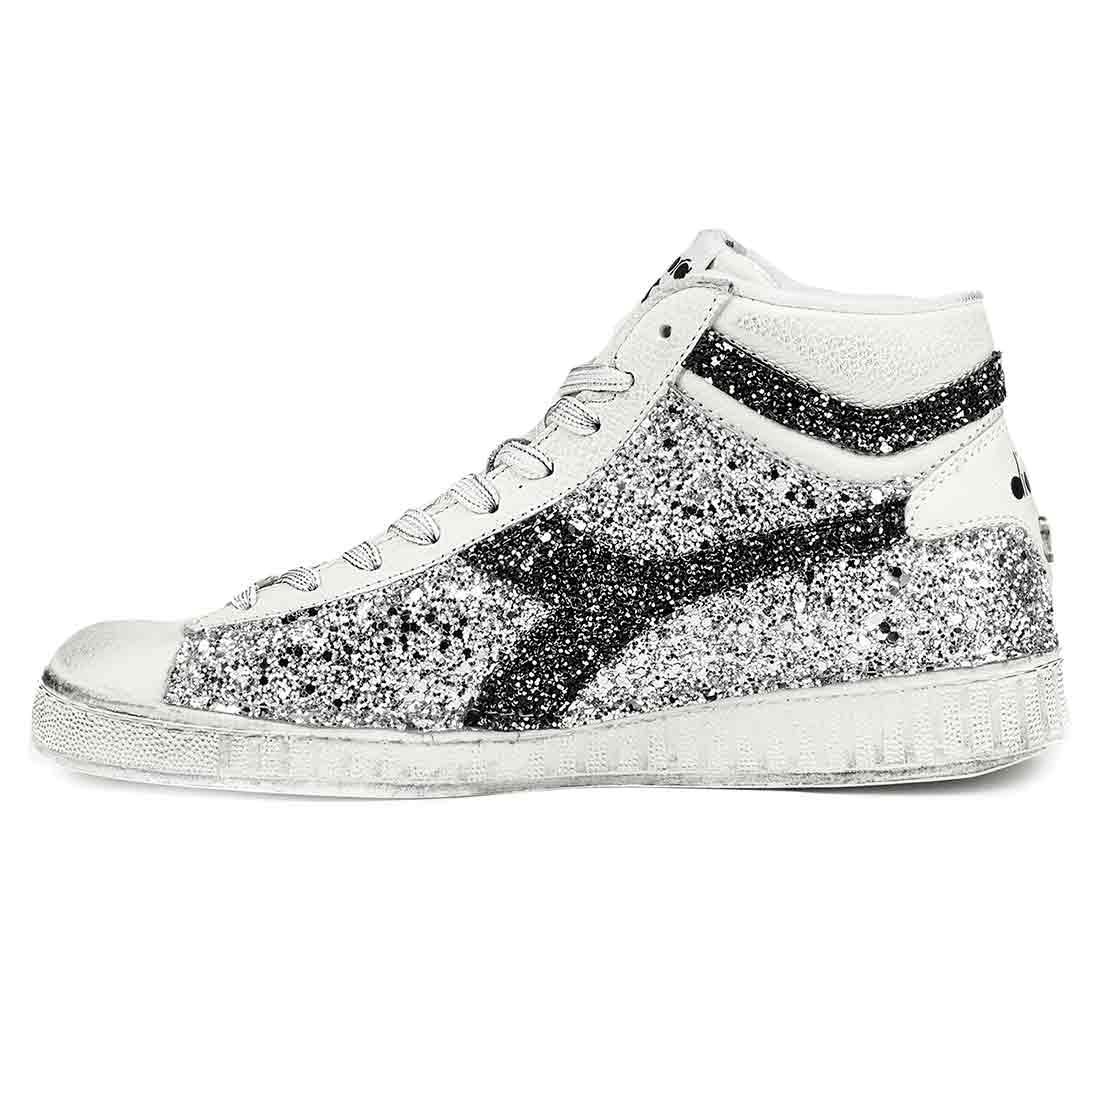 sneakers diadora game high con glitter argento e nero